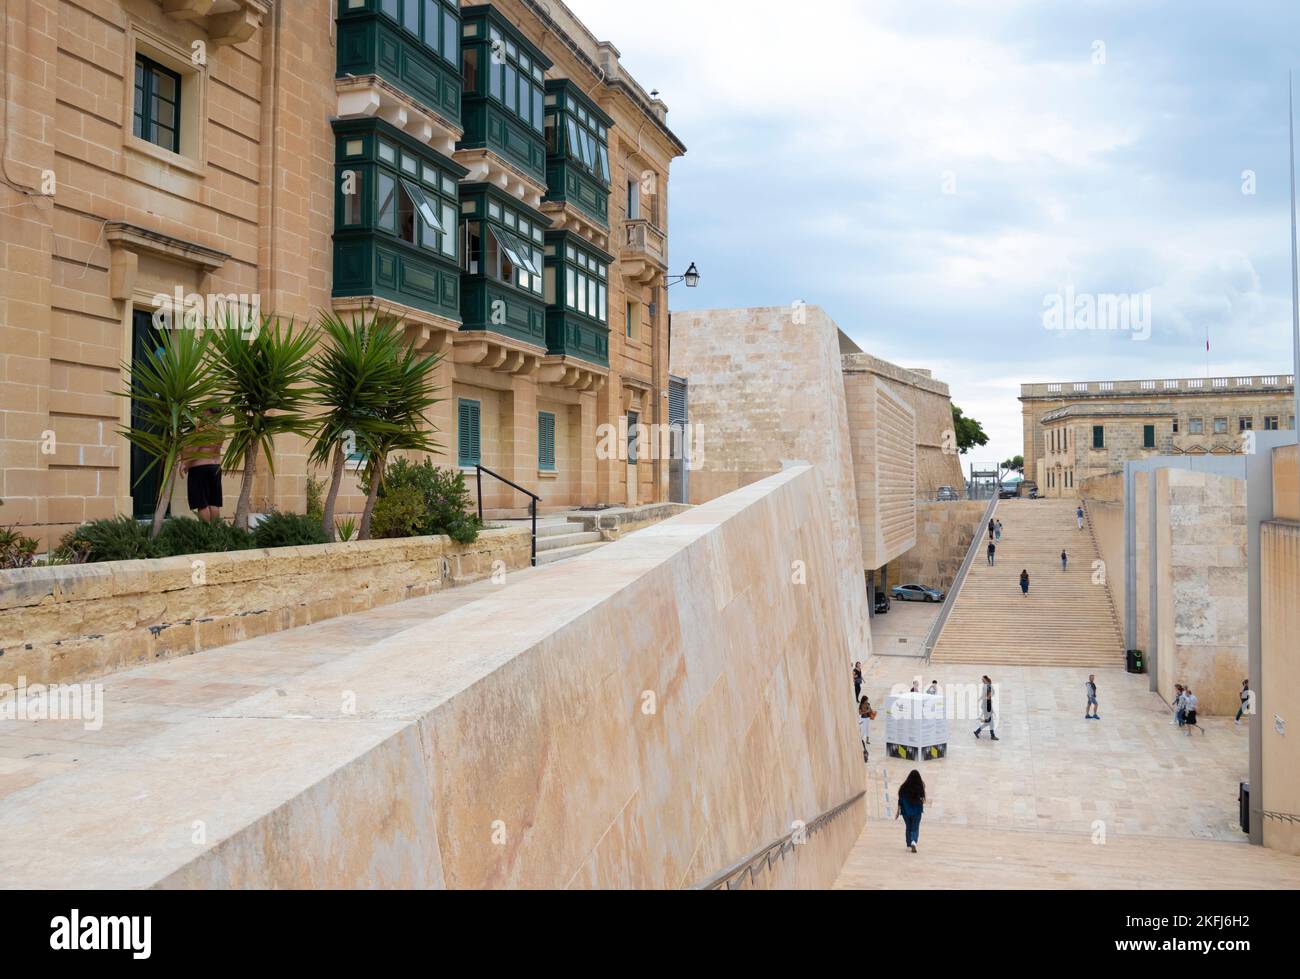 Valletta, Malta - November12, 2022: Progetto Renzo piano - porta in armonia la storica casa maltese e il moderno edificio del Parlamento con scala di accesso alla città Foto Stock